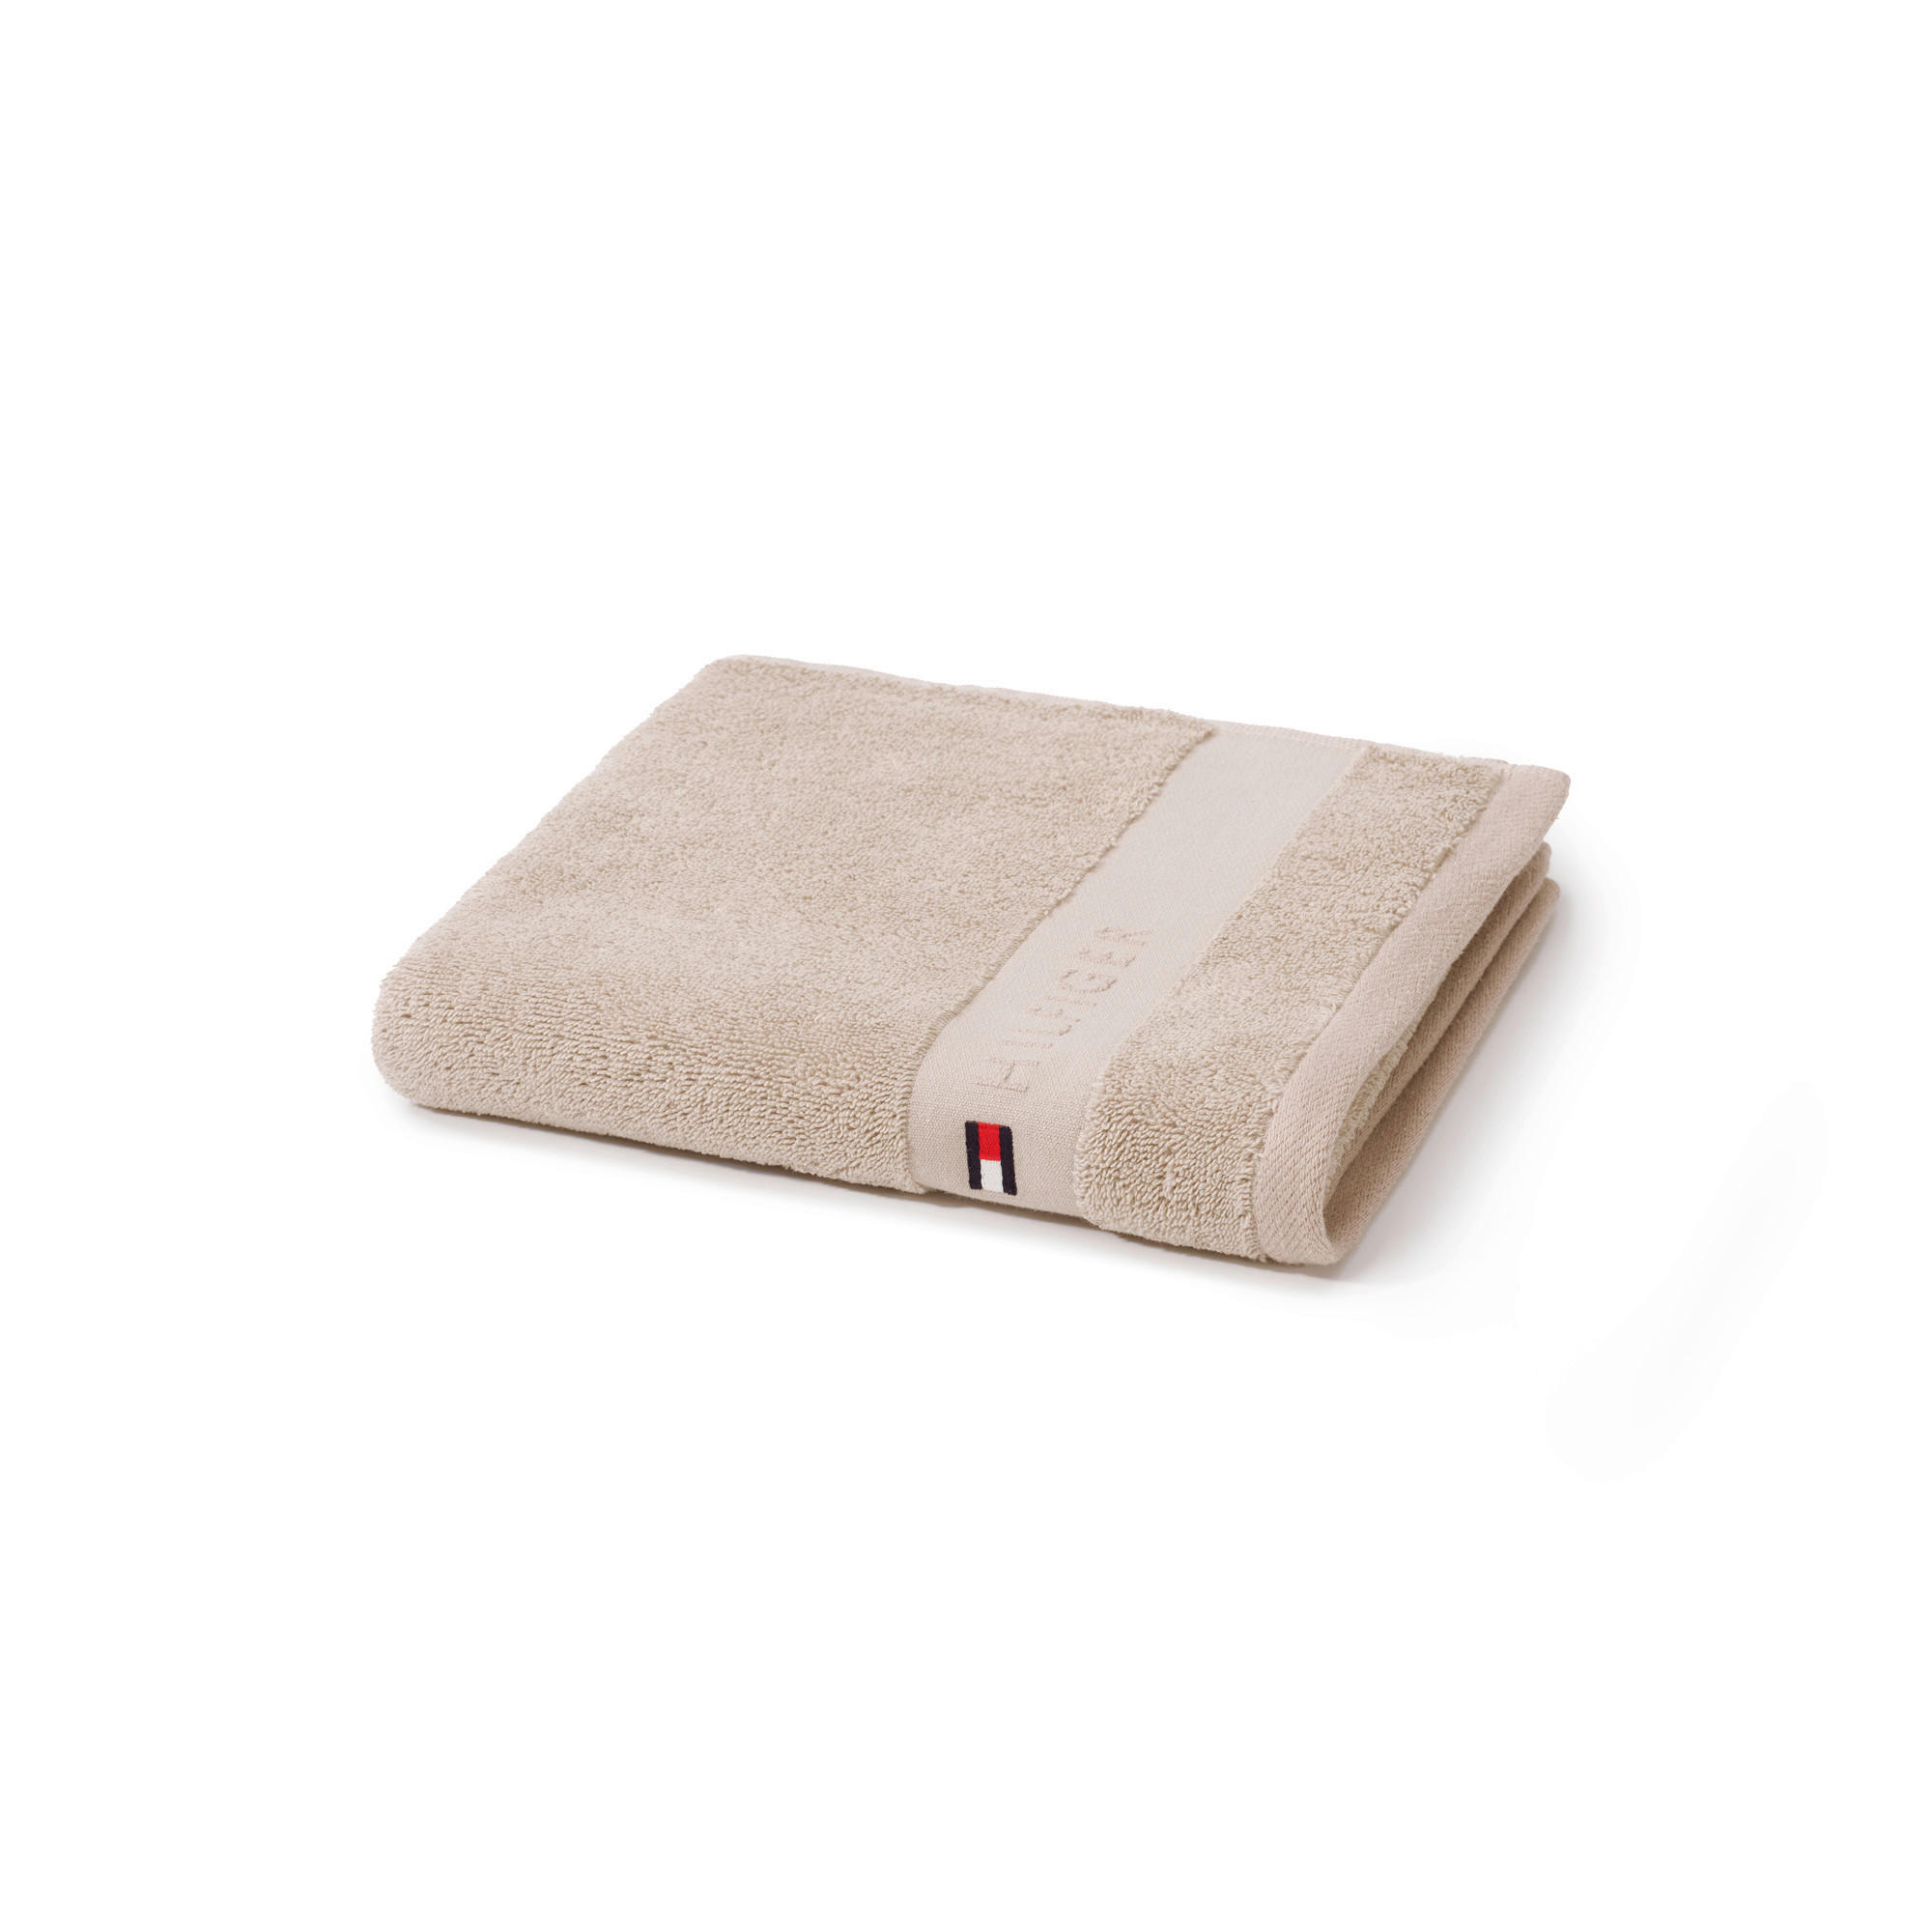 HANDTUCH Plain  - Sandfarben, Basics, Textil (50/100cm) - Tommy Hilfiger